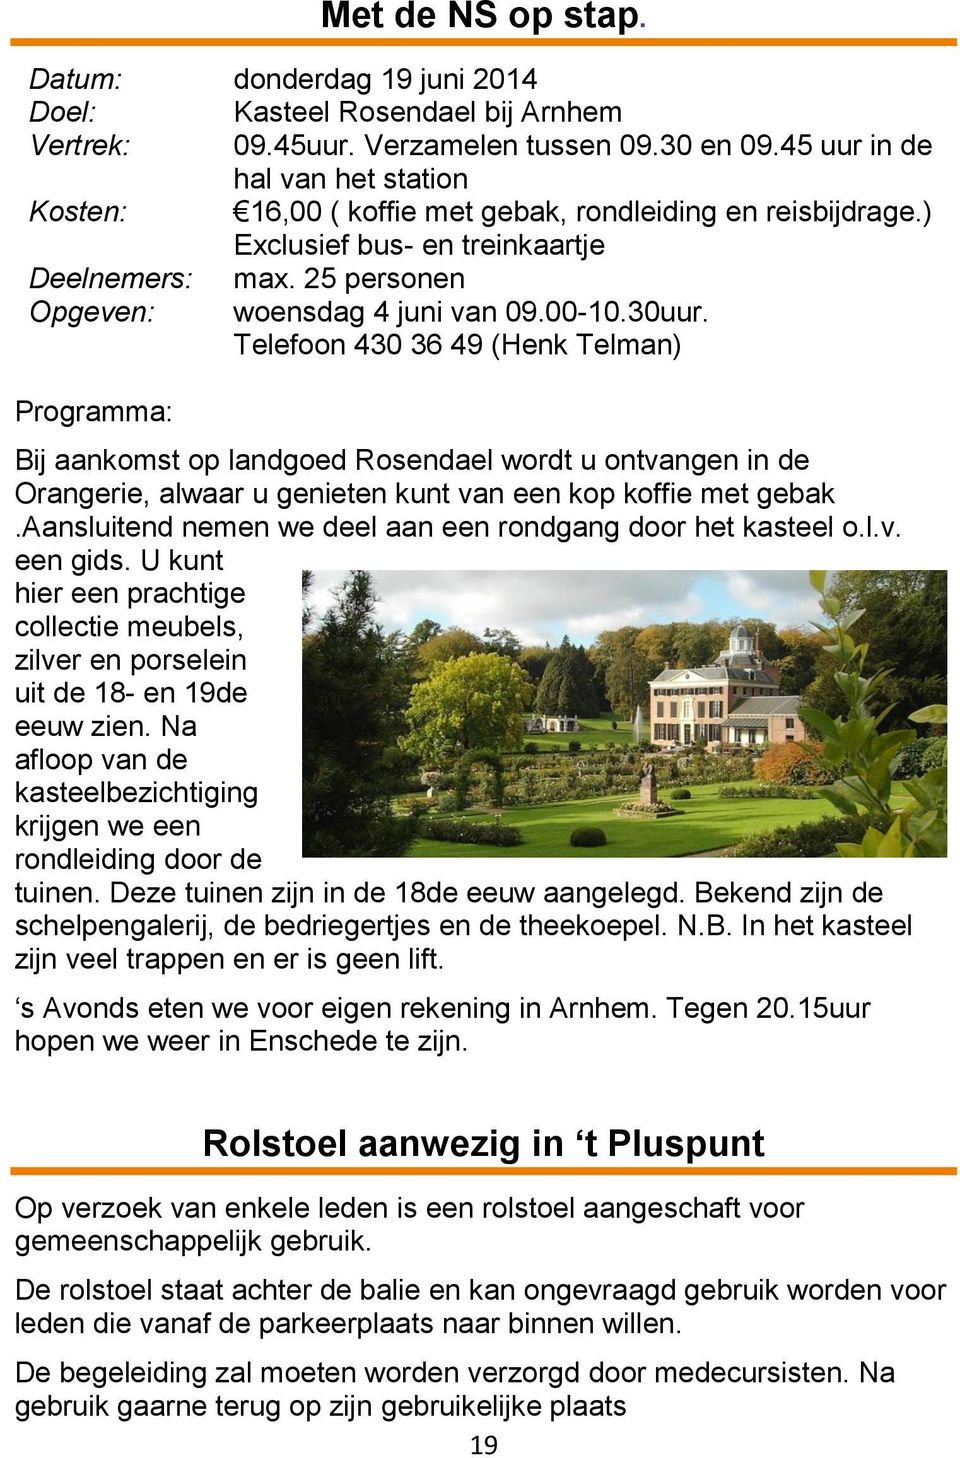 30uur. Telefoon 430 36 49 (Henk Telman) Programma: Bij aankomst op landgoed Rosendael wordt u ontvangen in de Orangerie, alwaar u genieten kunt van een kop koffie met gebak.